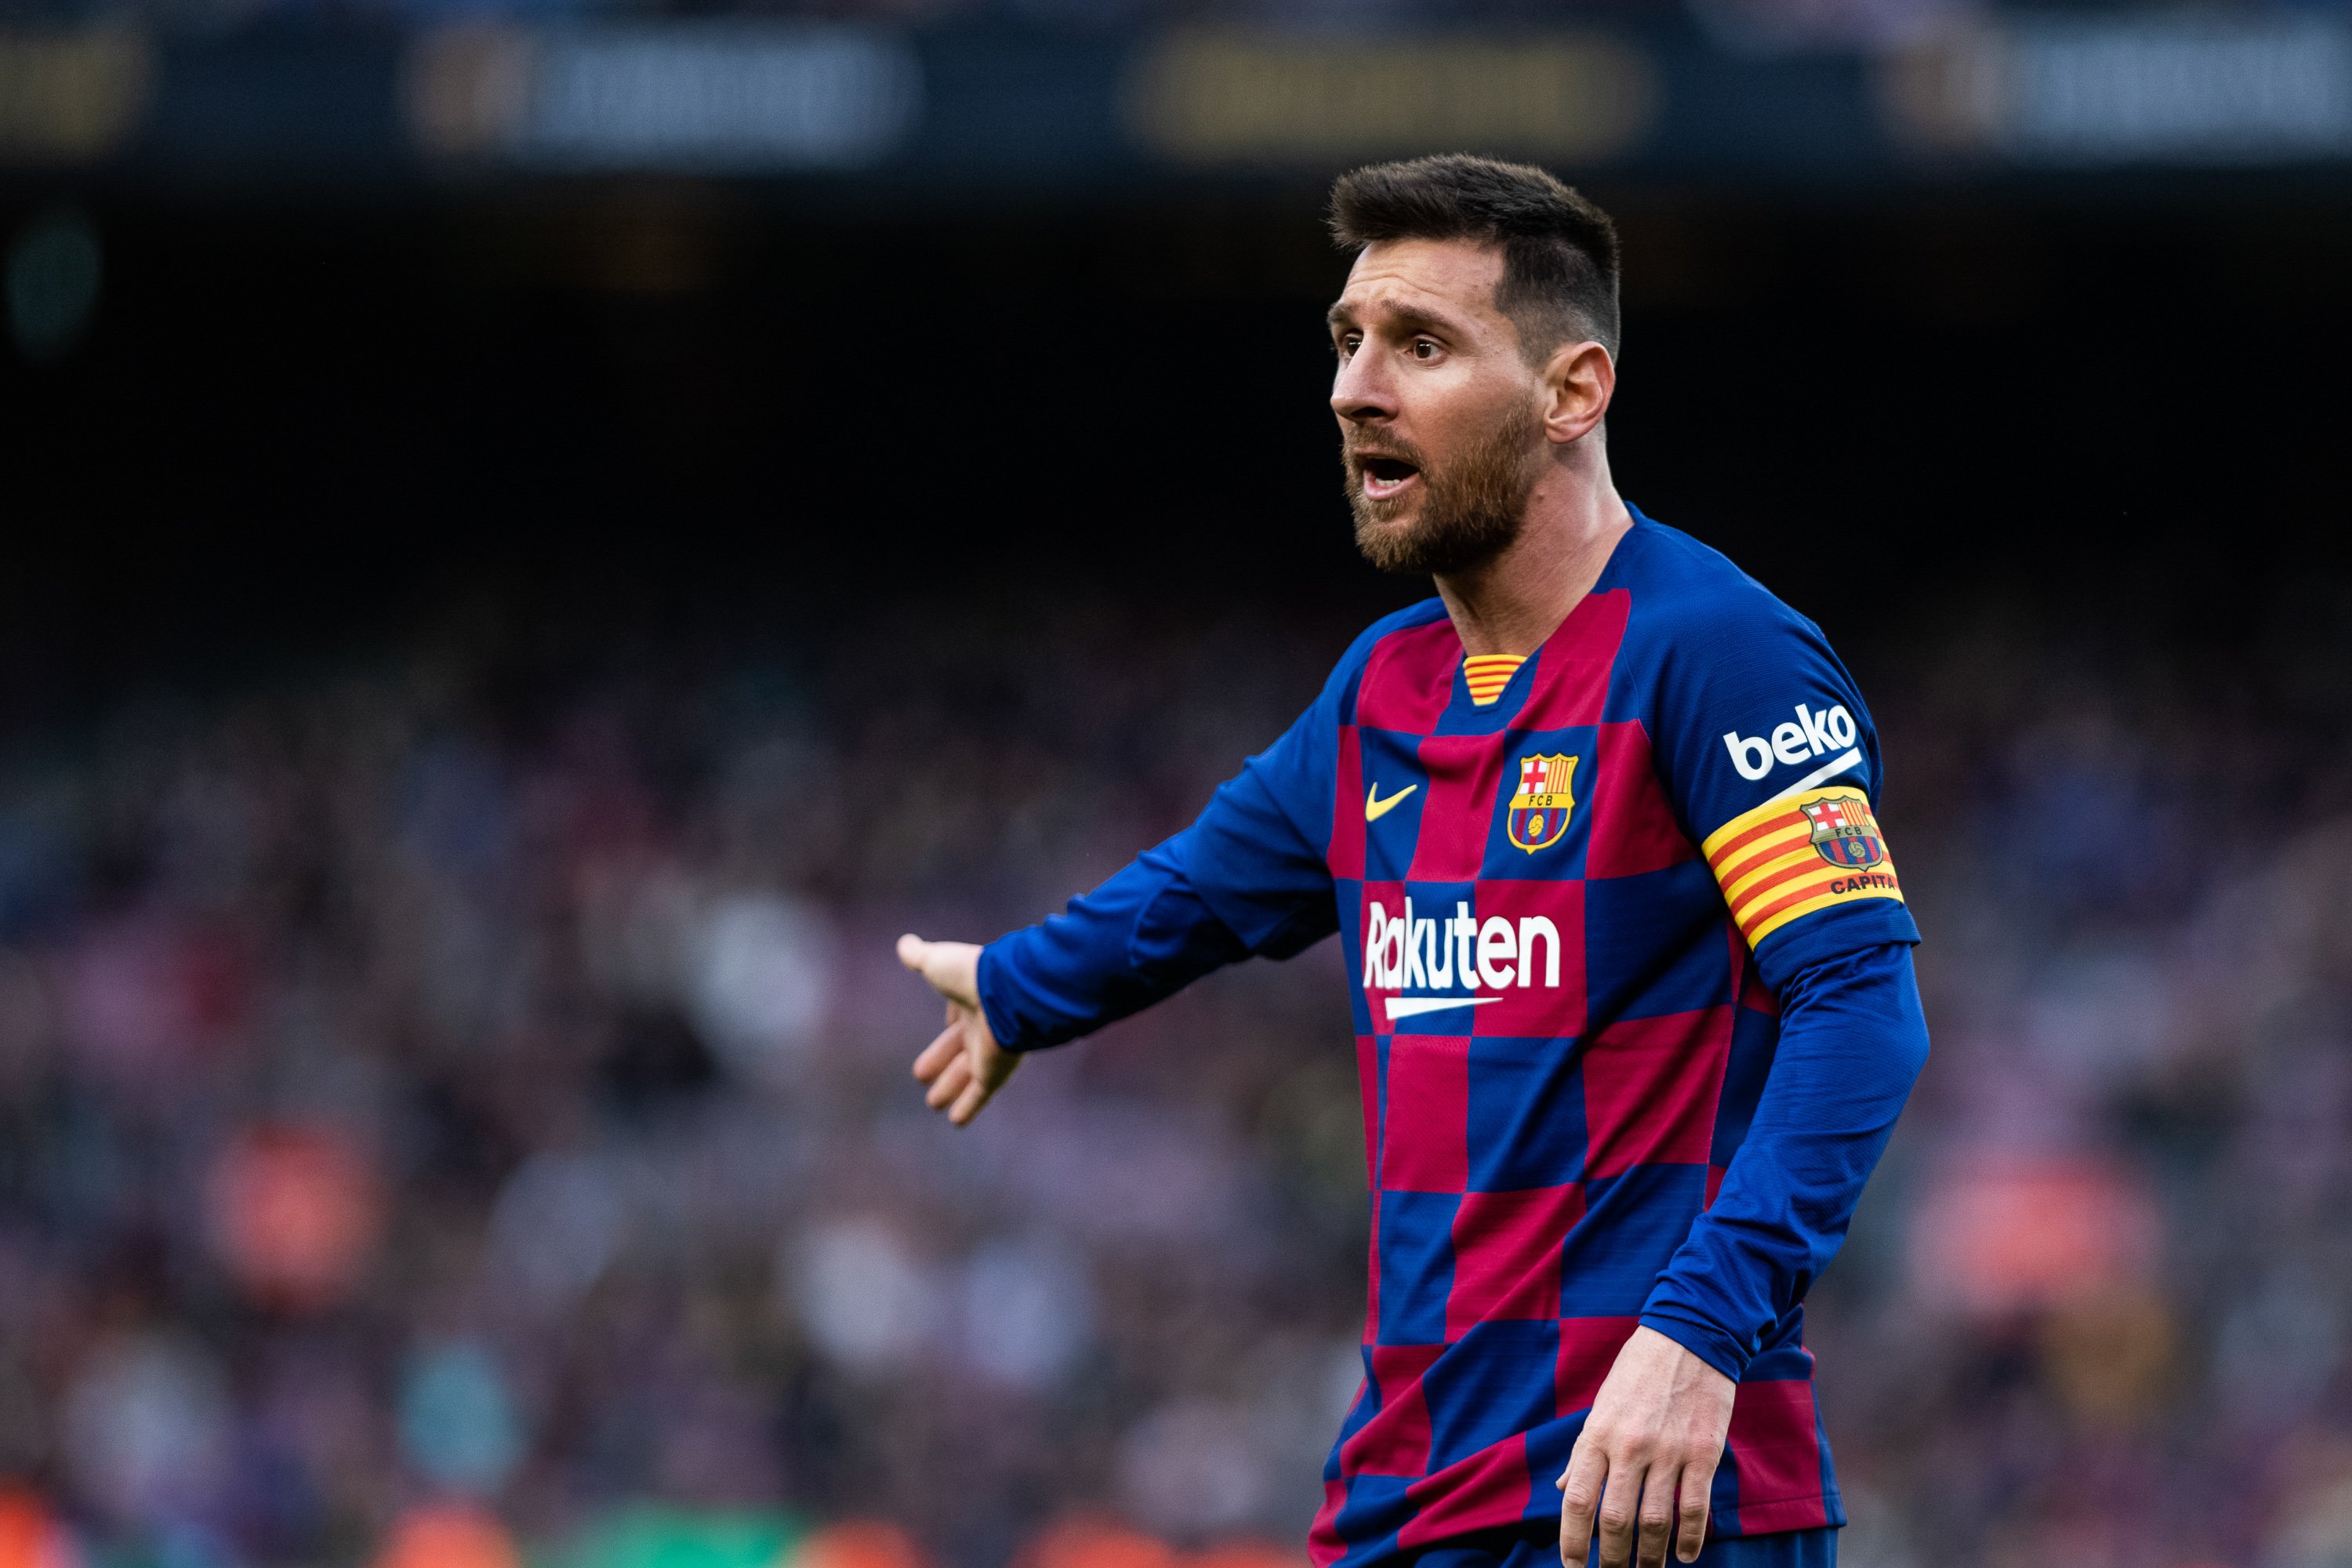 Las posibles sanciones a Messi: de la suspensión de empleo y sueldo al despido